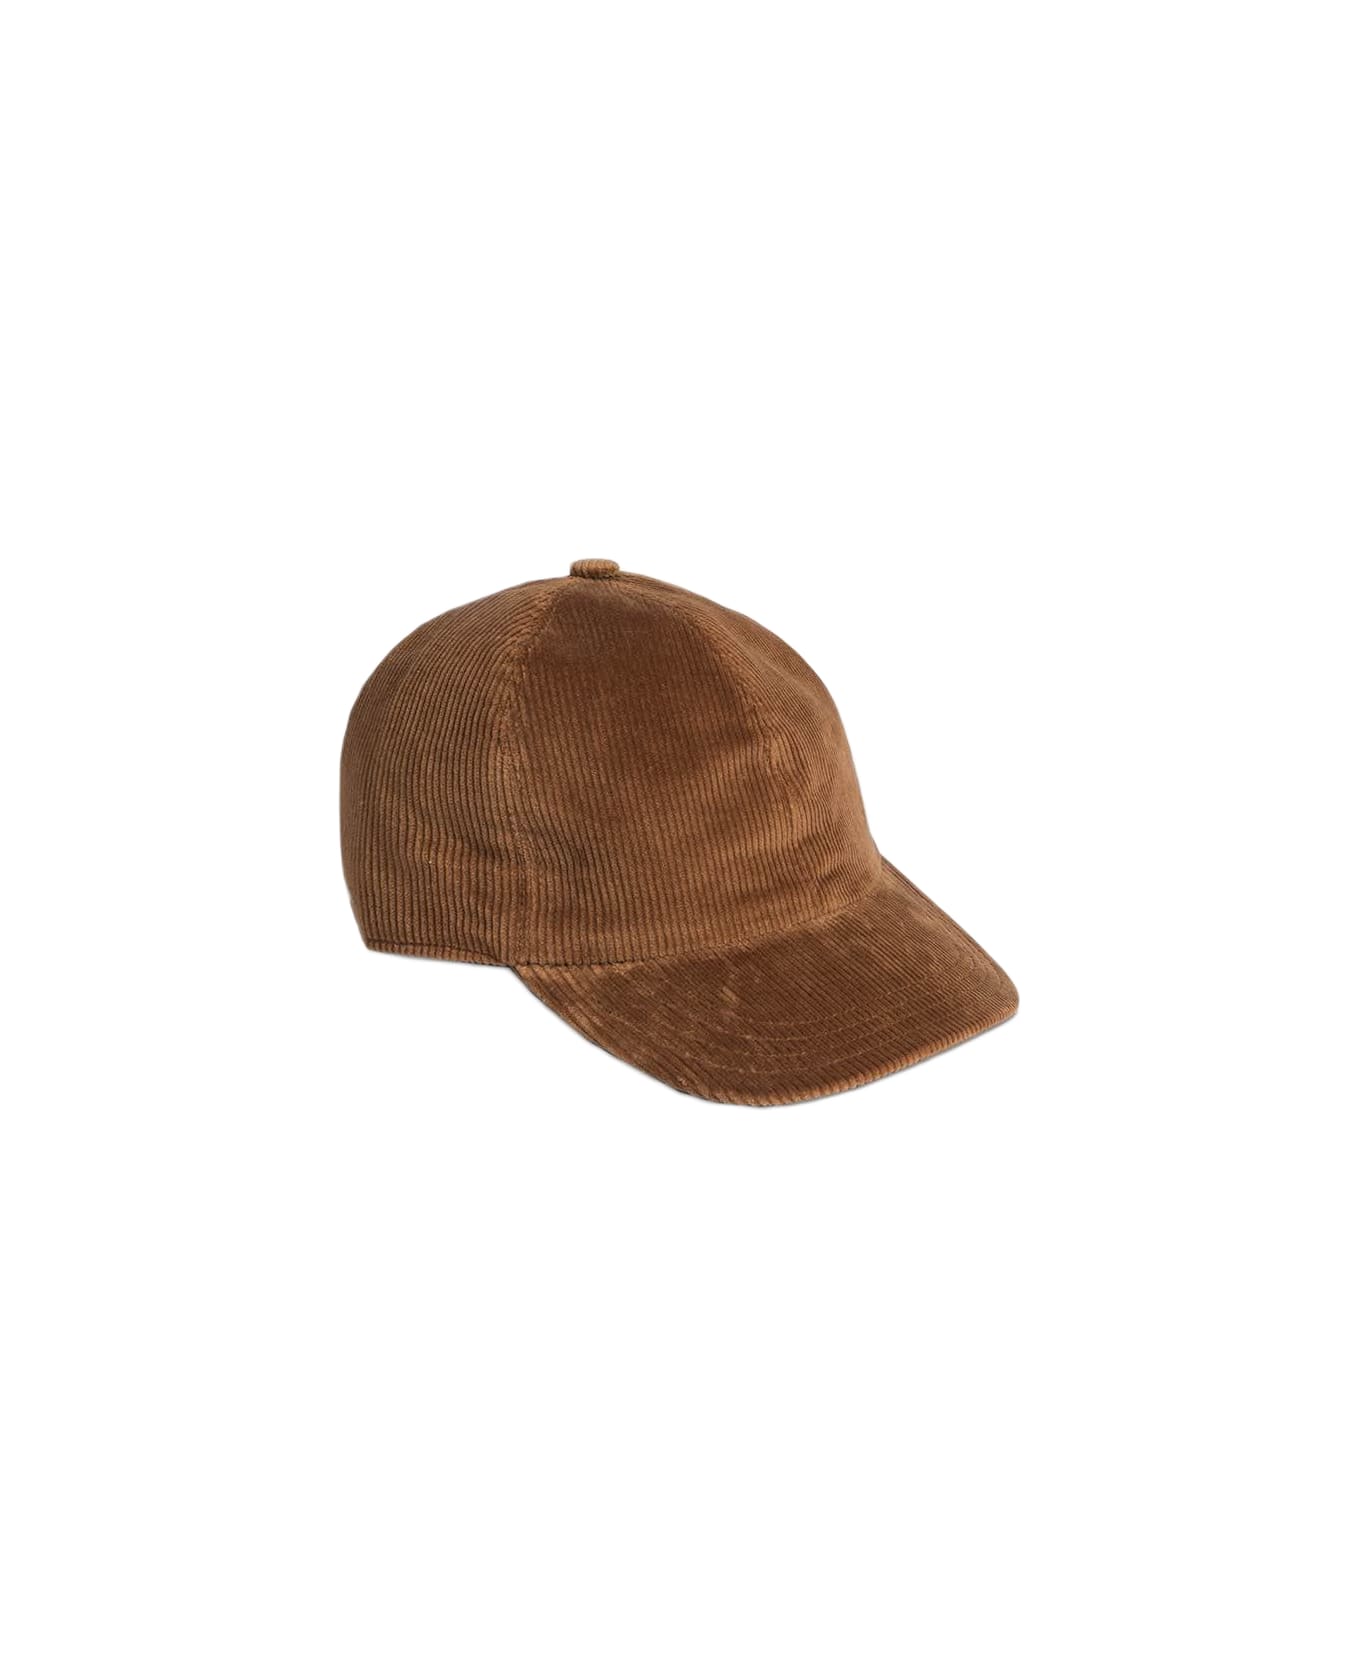 Larusmiani Baseball Cap Hat - Brown 帽子